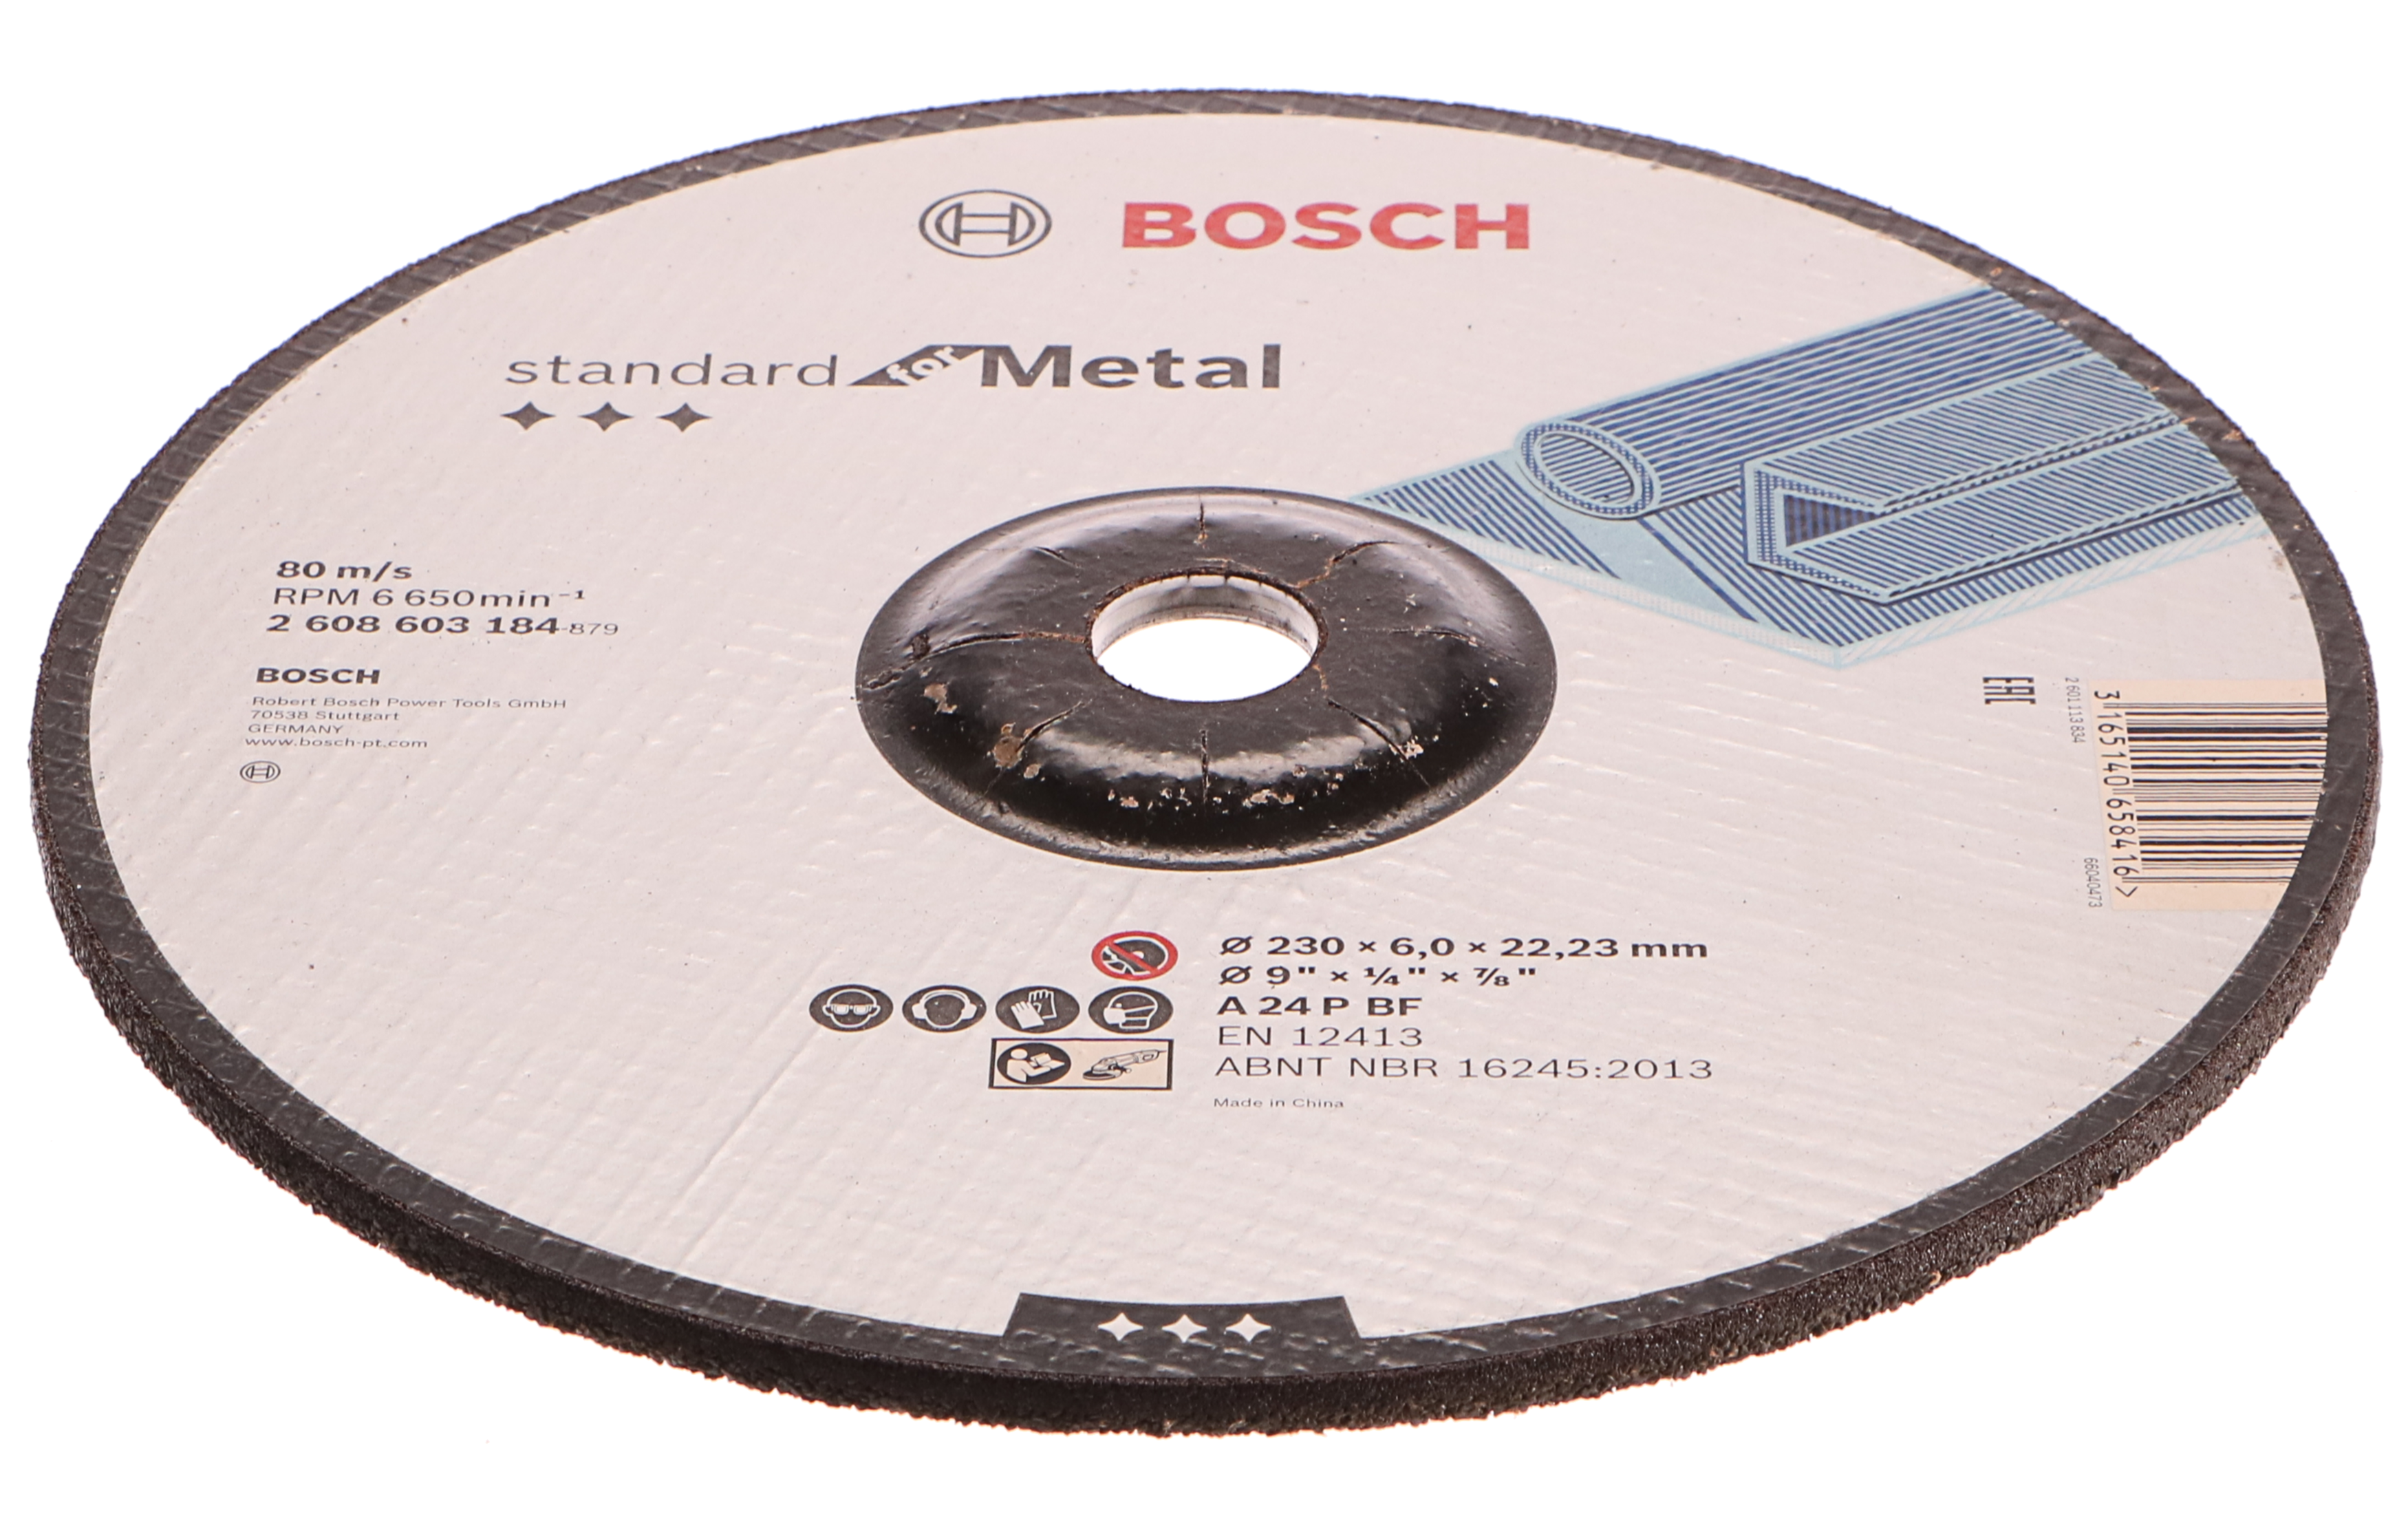 Hrubovací kotouč profilovaný Standard for Metal - A 24 P BF, 230 mm, 22,23 mm, 6,0 mm - 31 BOSCH